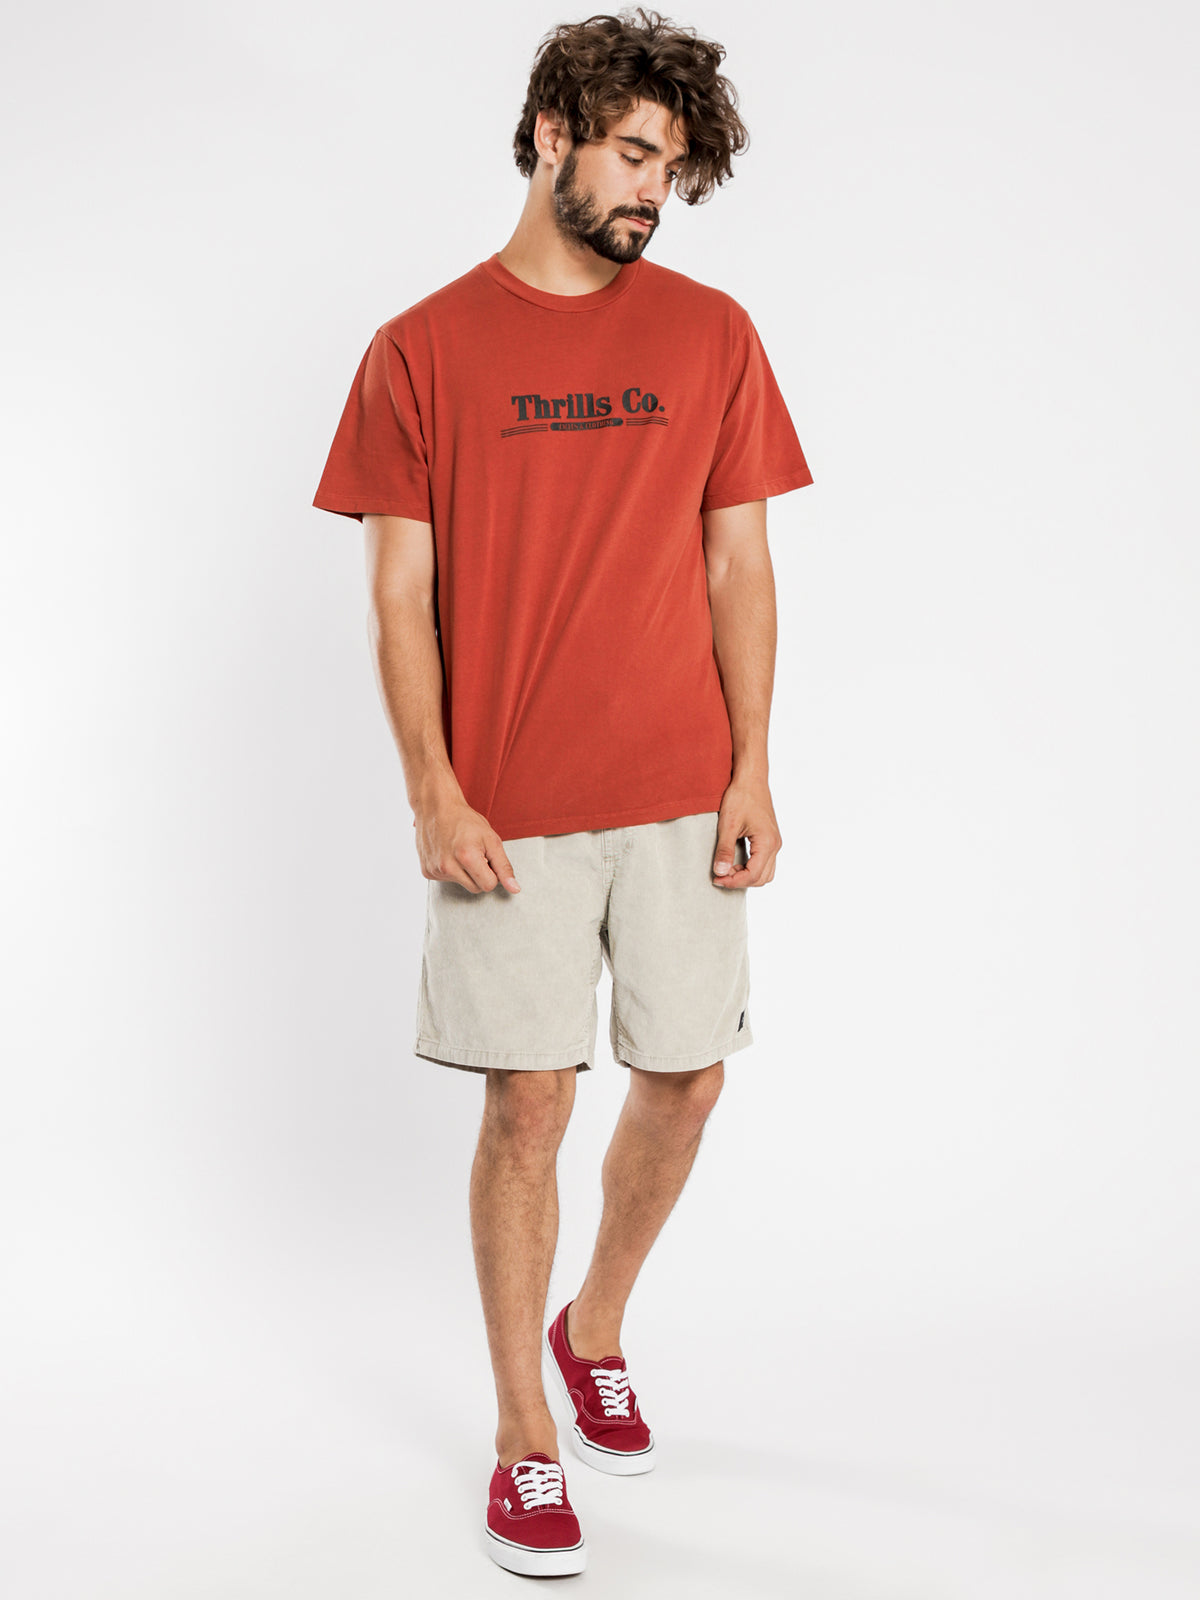 Speedline Merch Fit T-Shirt in Rocker Red